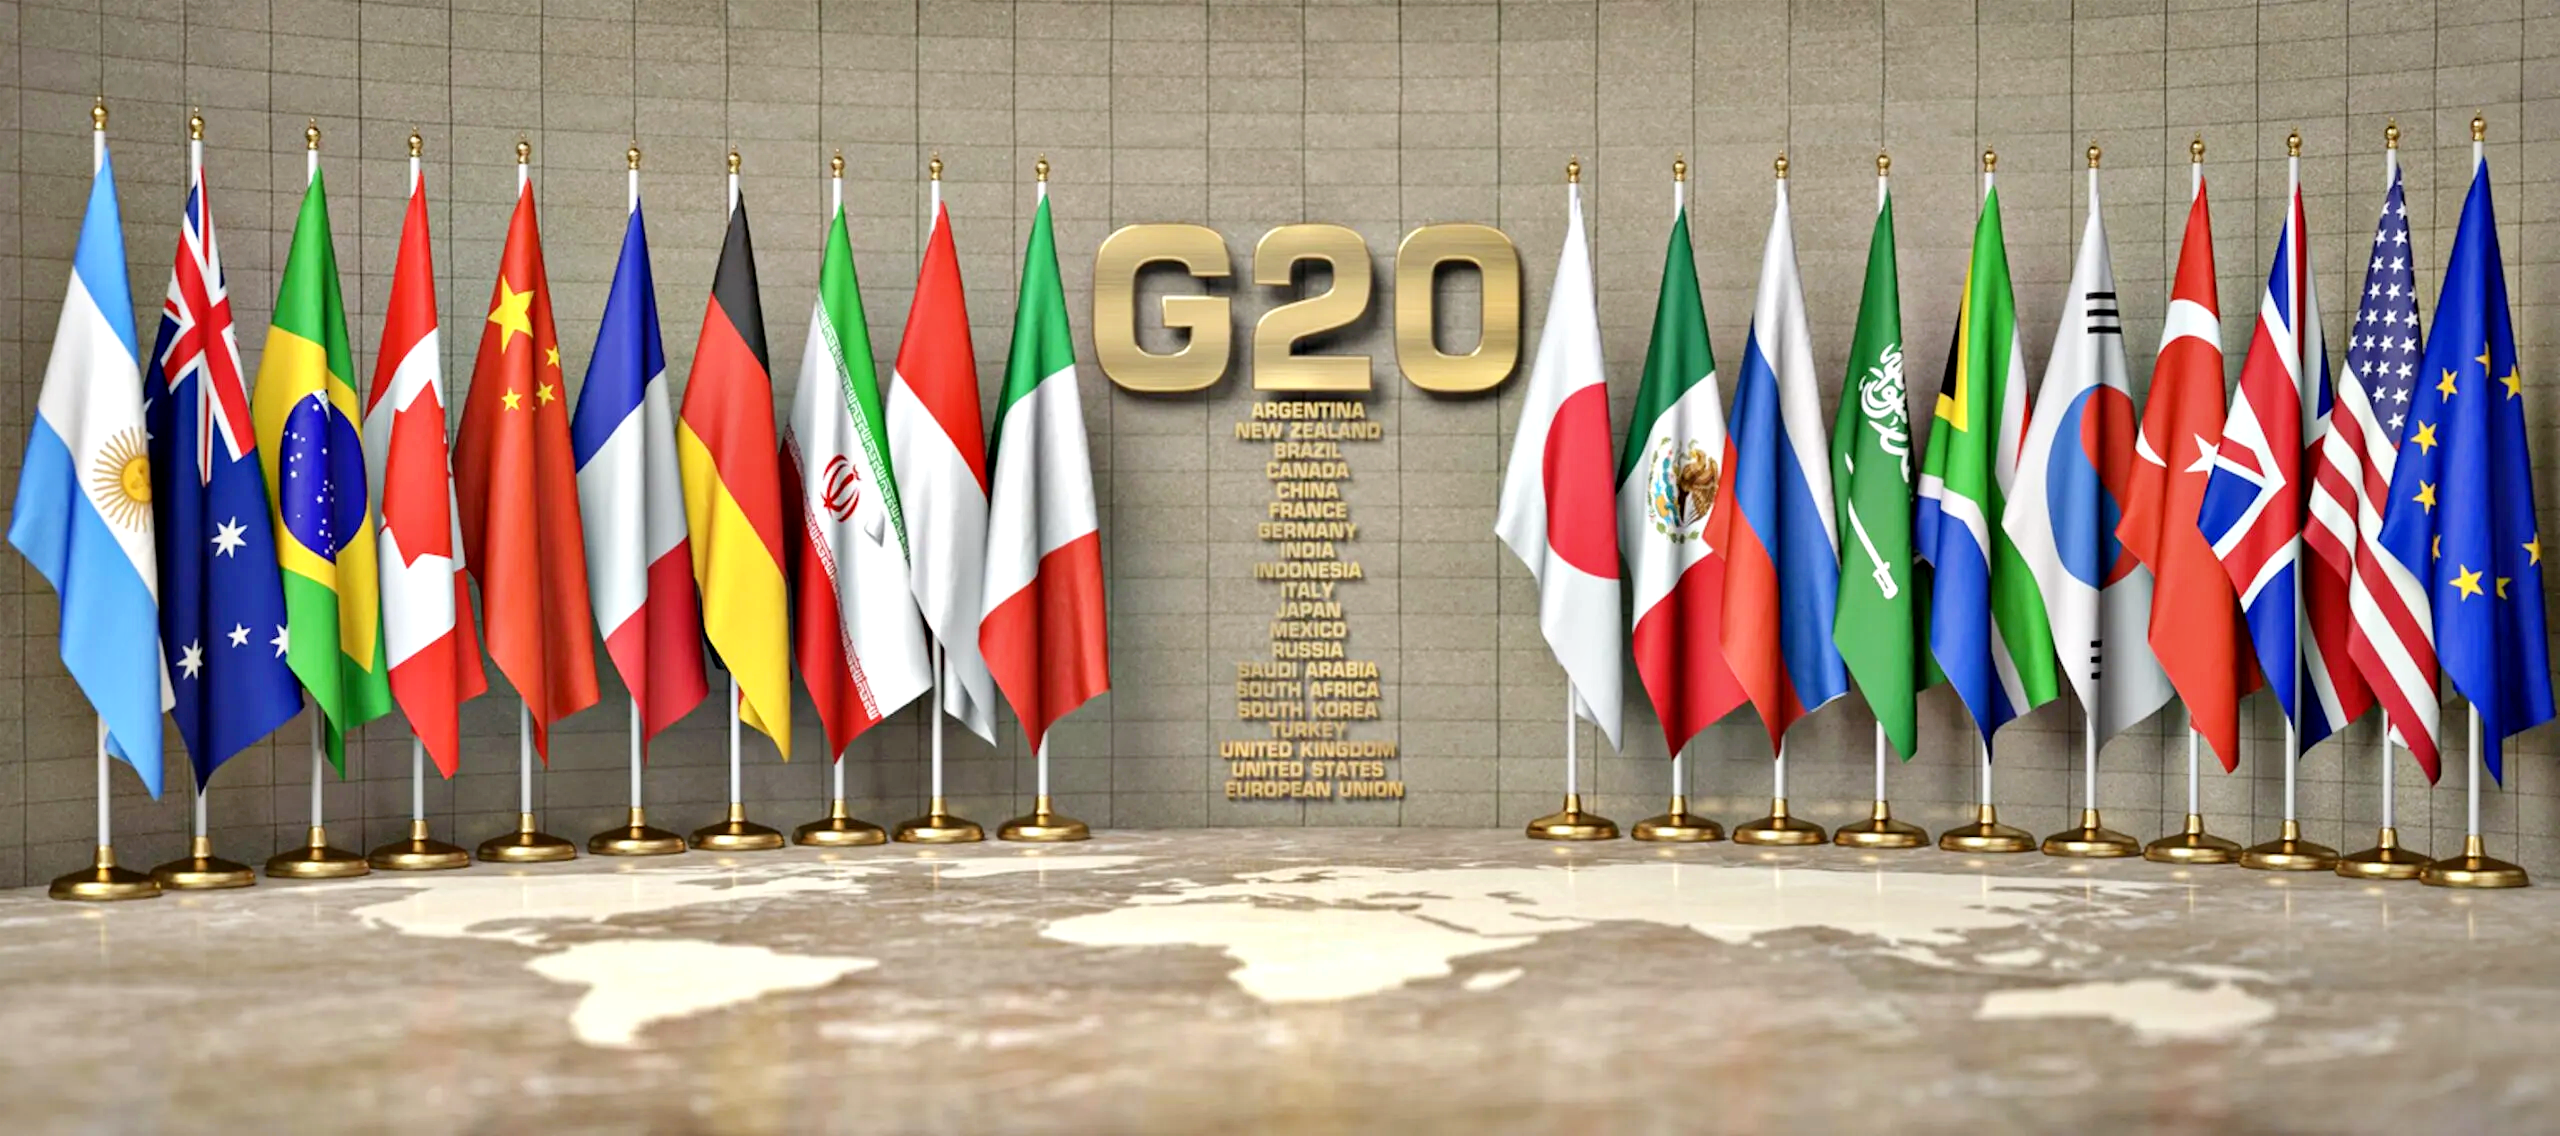 Il G20 è diviso su Ucraina, Meloni al summit indiano: impegno dell’Italia per evitare il flop